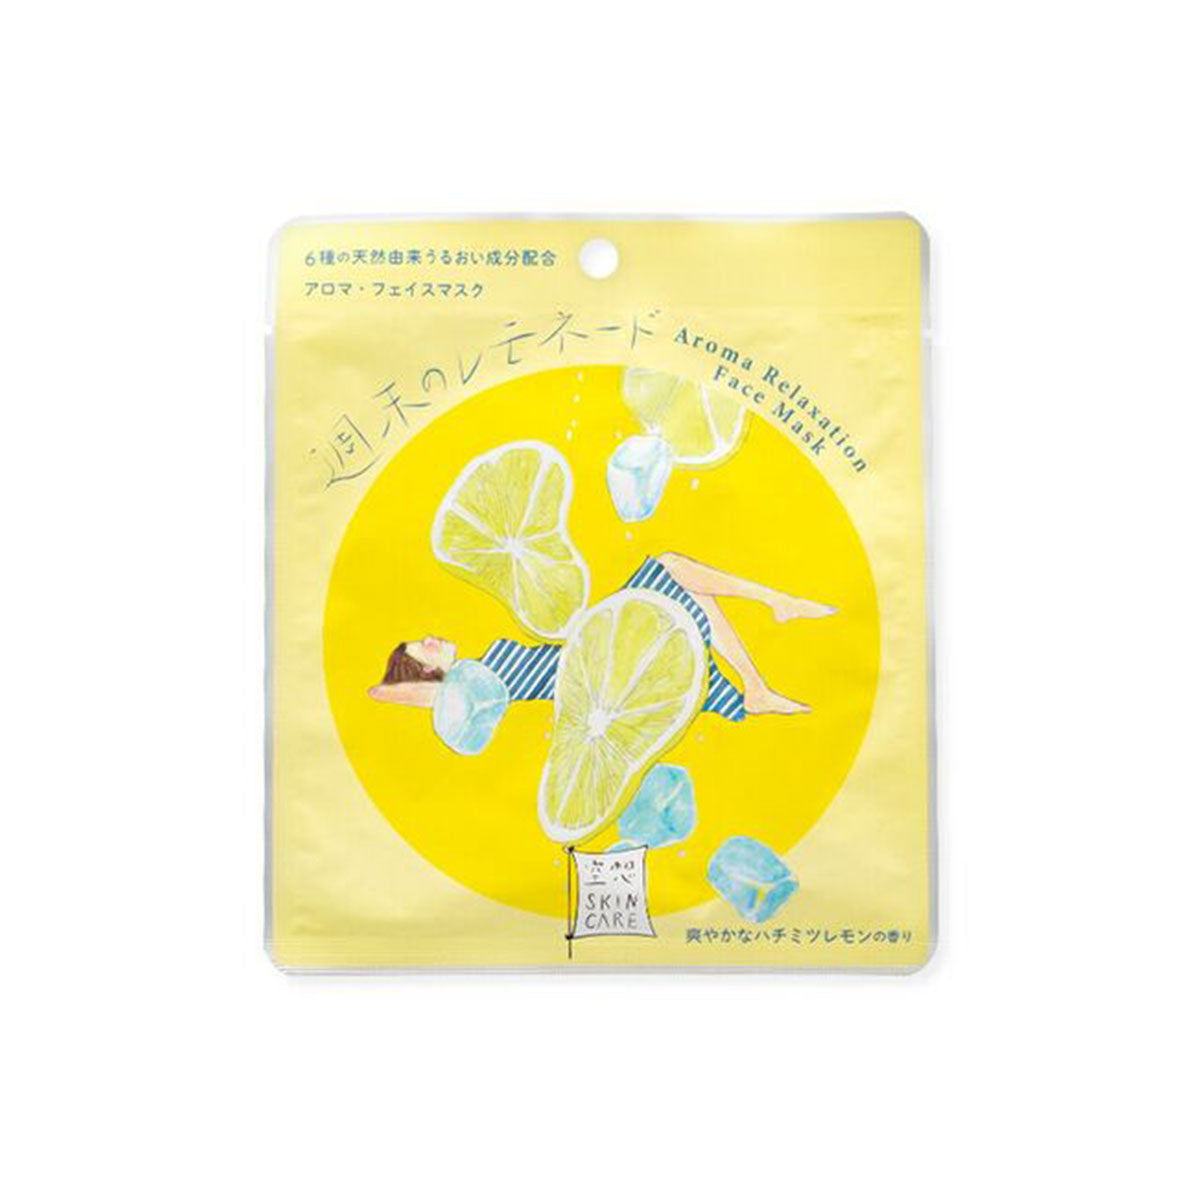 日本Charley幻想浴室芳香放松套装含面膜和浴盐 #柠檬香